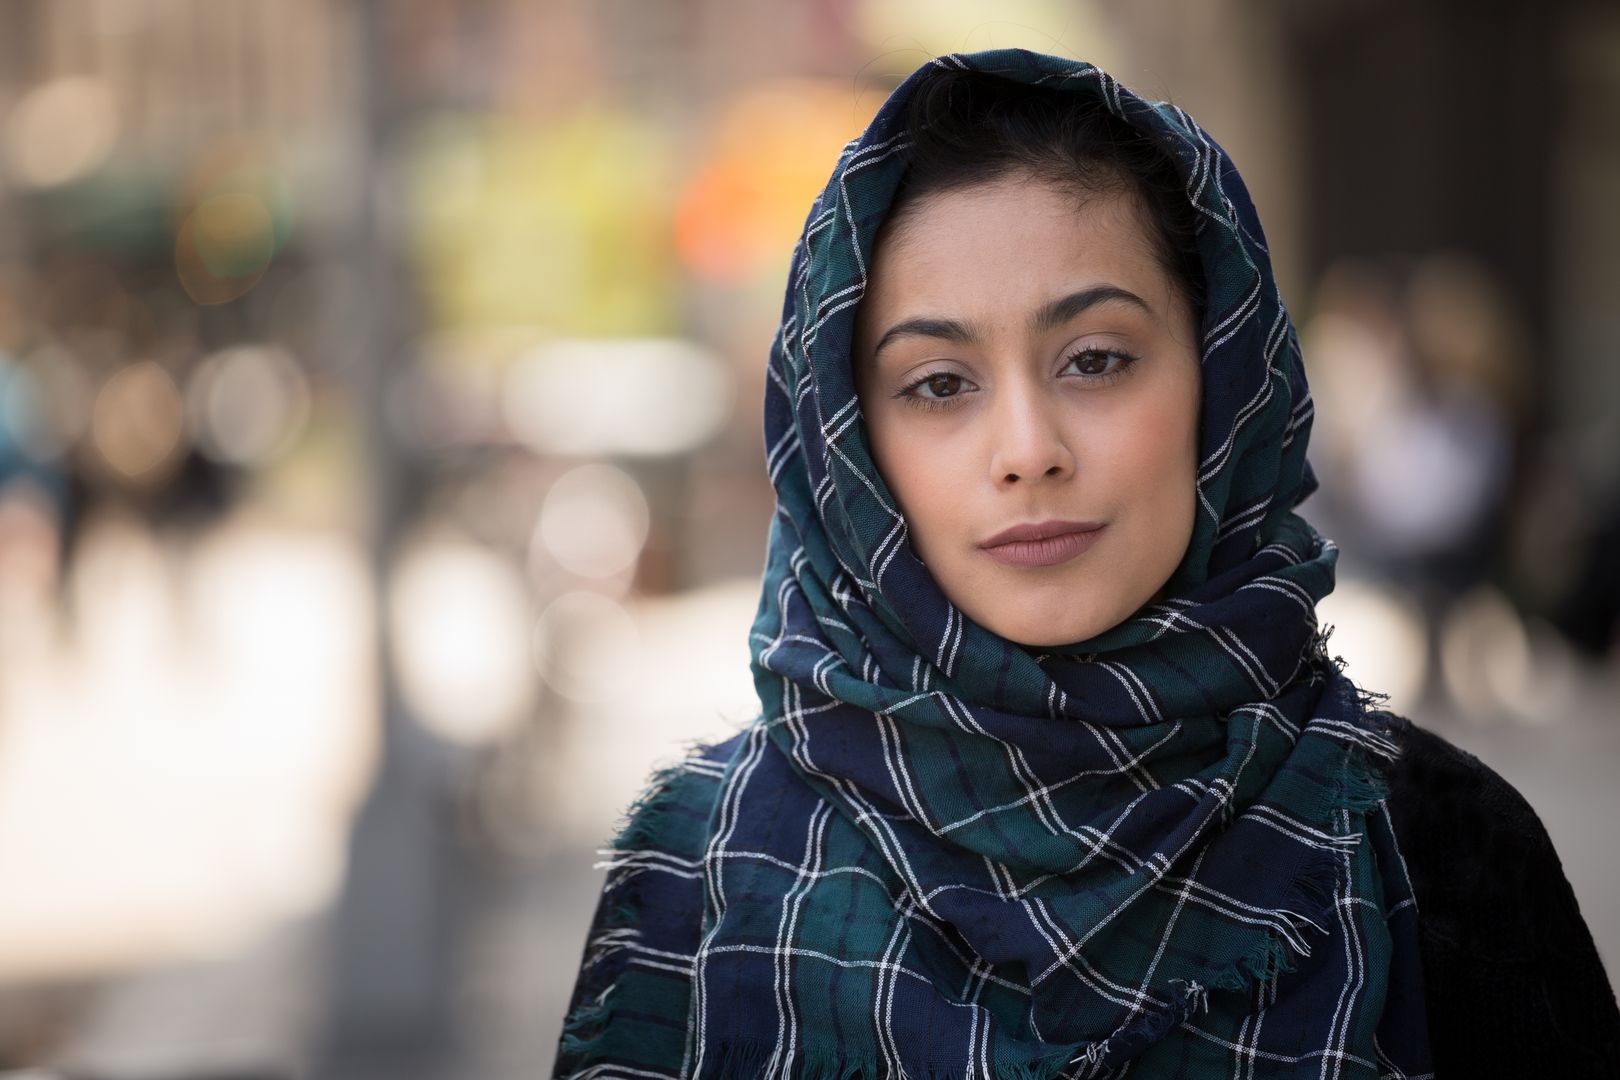 Polityk chce zakazu paszportowych zdjęć w hidżabach